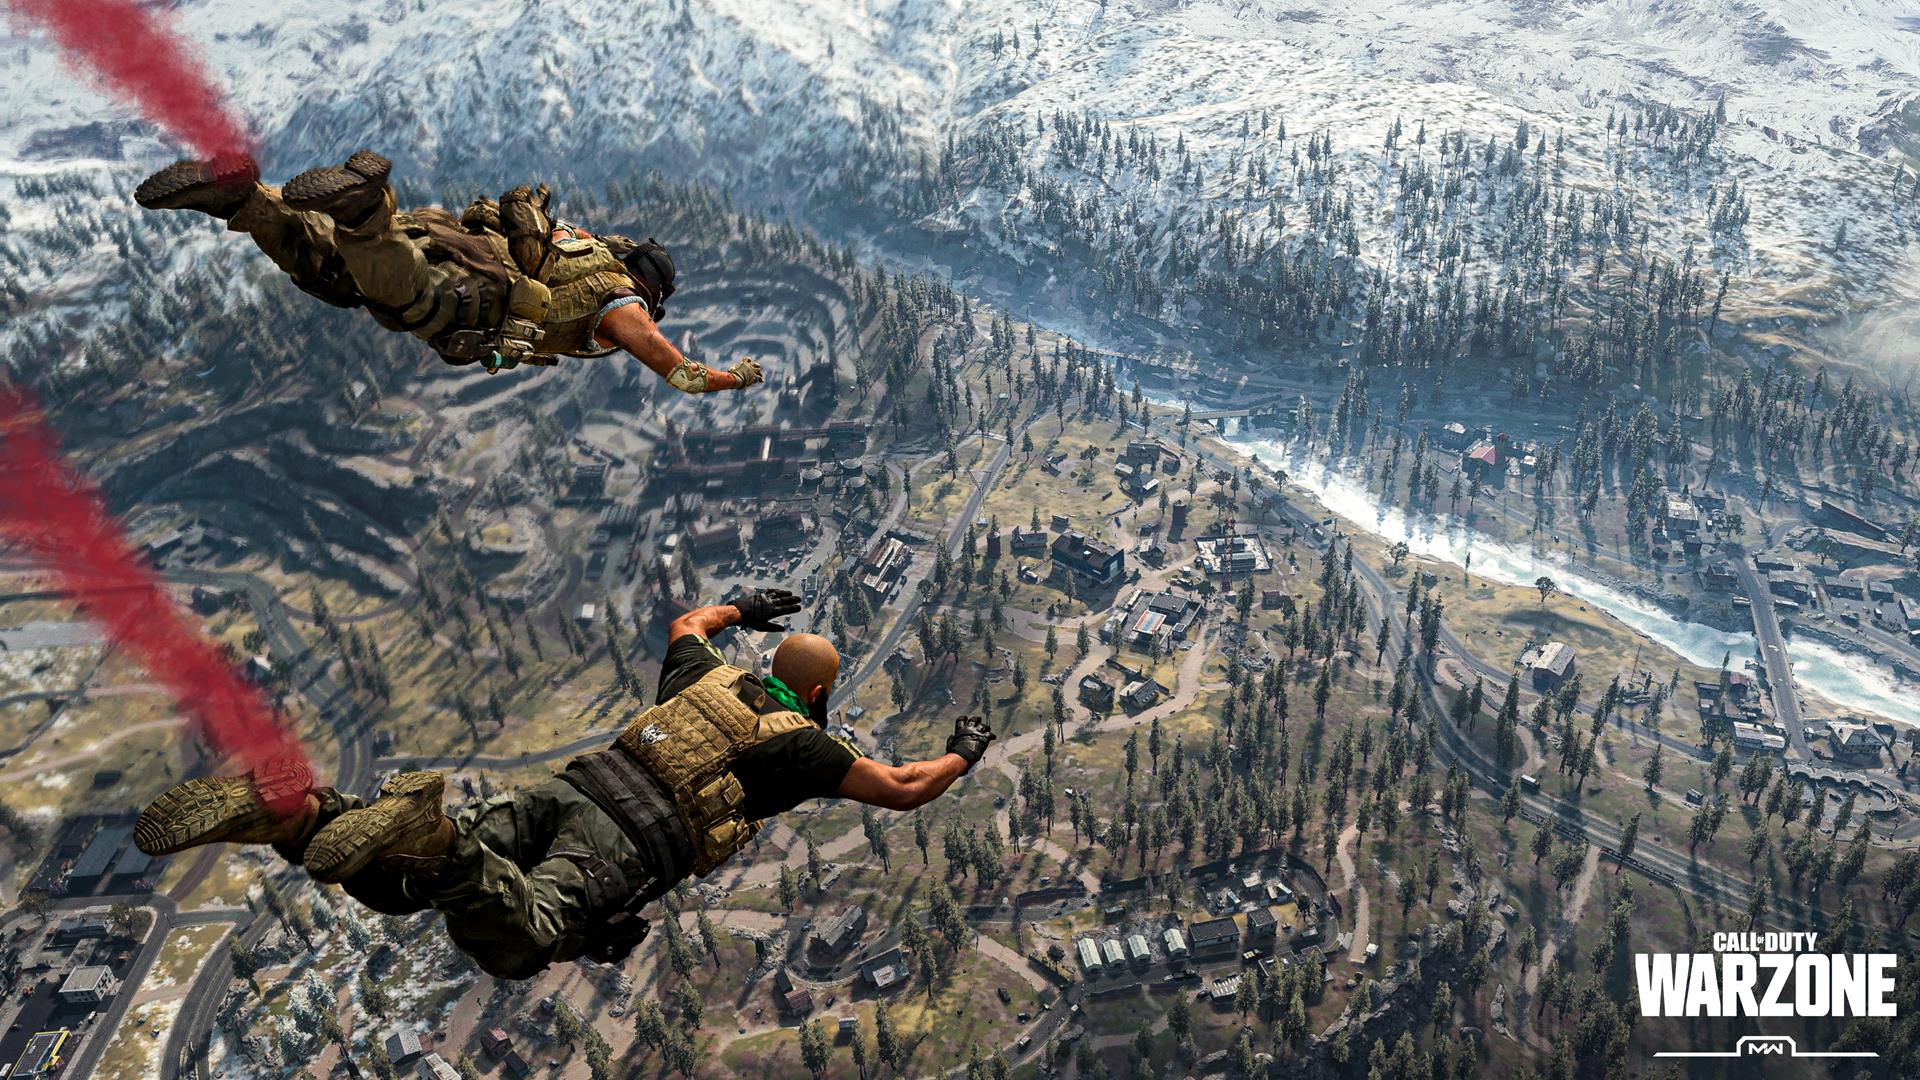 Call of Duty: Warzone admitirá a 200 jugadores "un poco más tarde", es posible que haya escuadrones más grandes